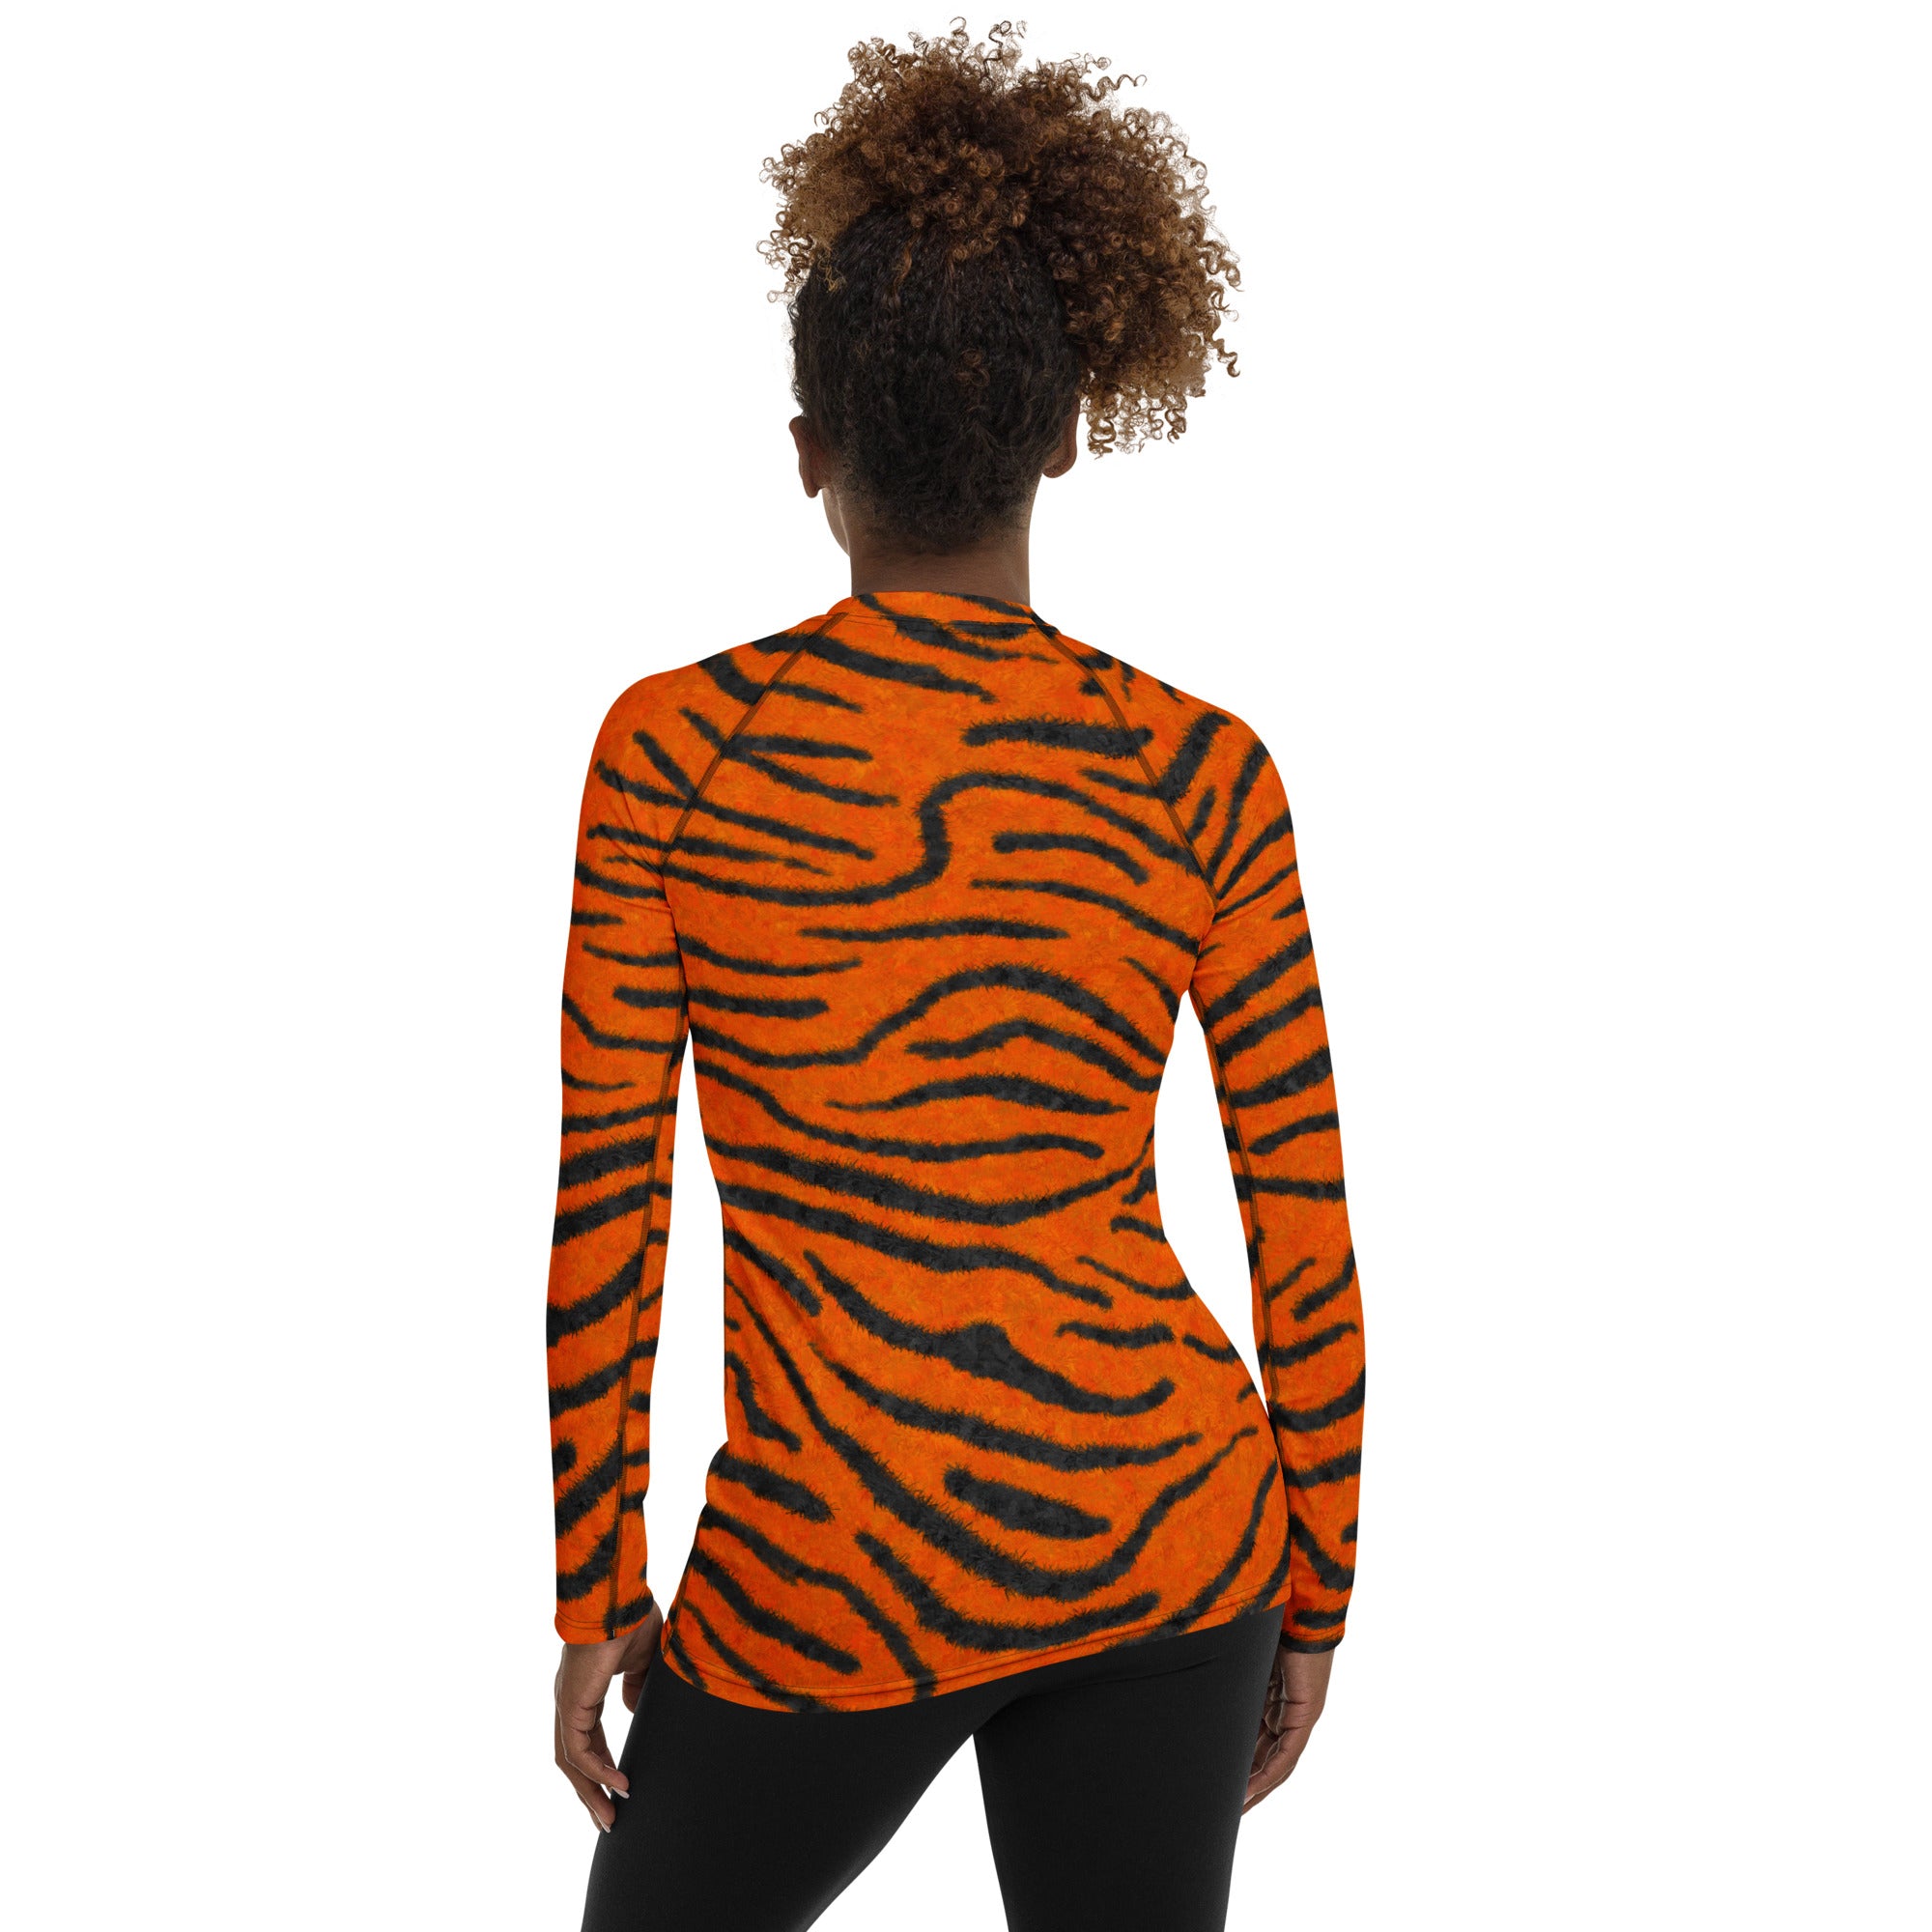 Fuzzy Tiger Stripe Print Women's Rash Guard